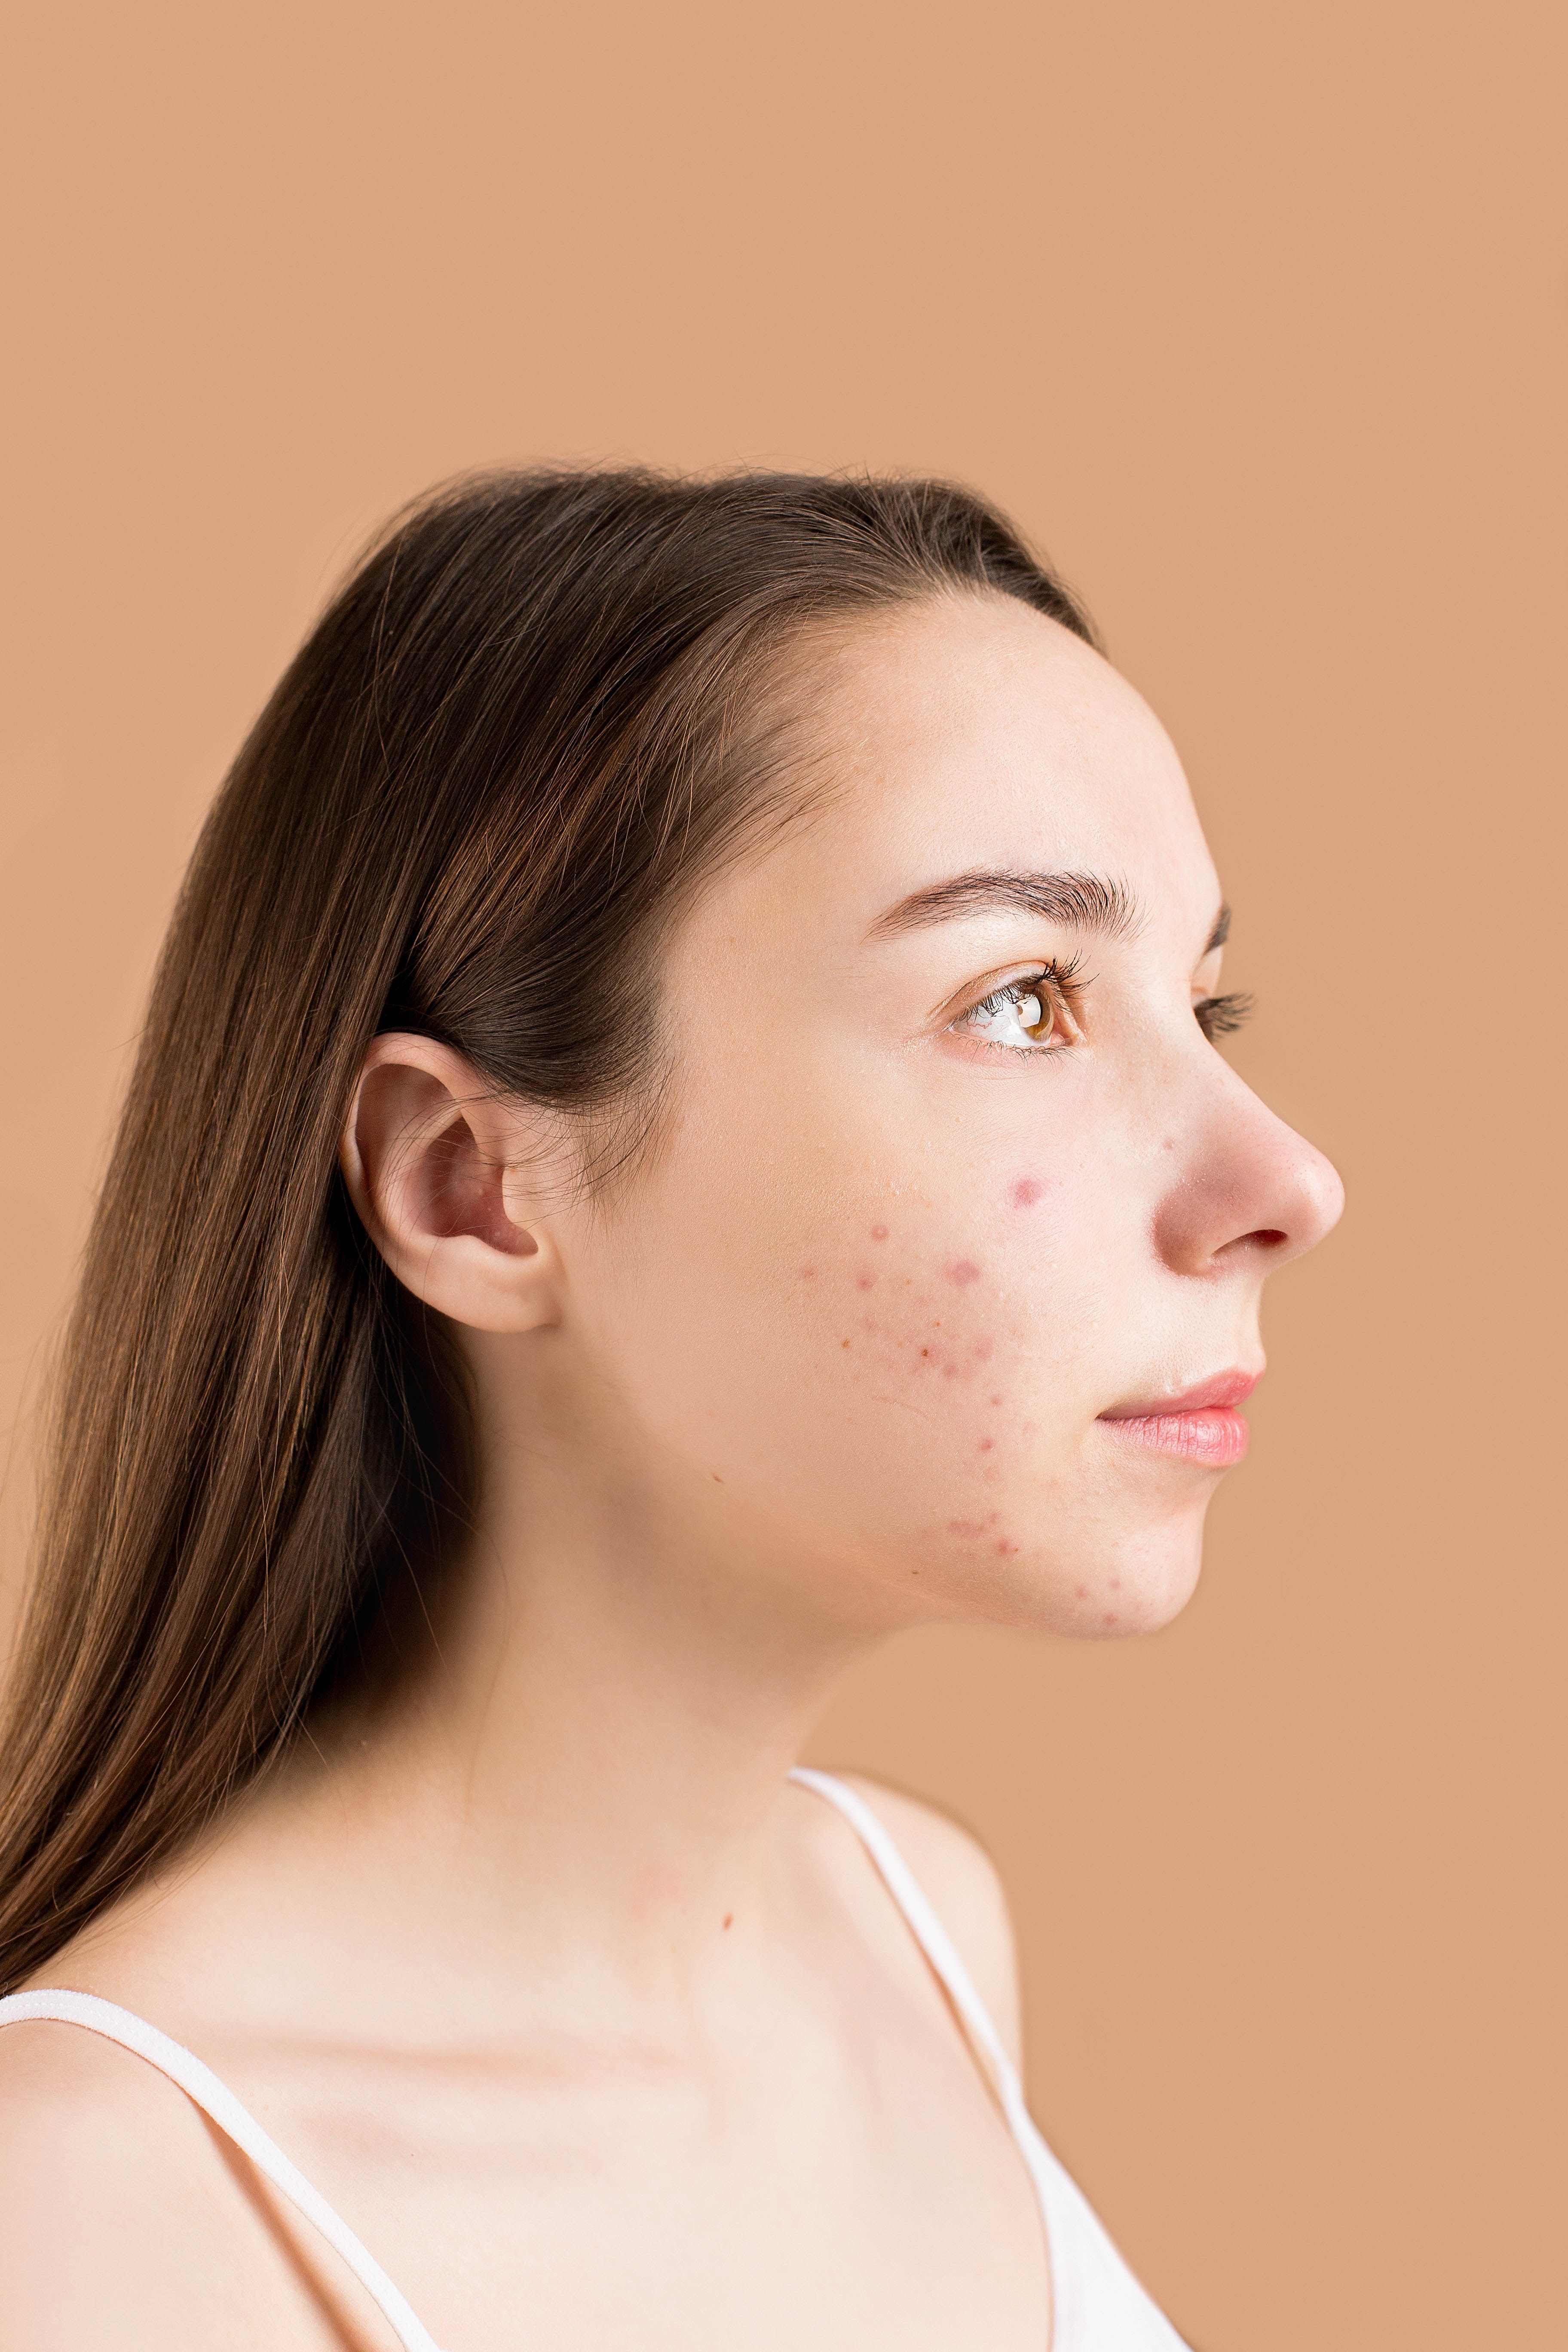 Une femme avec de l'acné | Source : Pexels